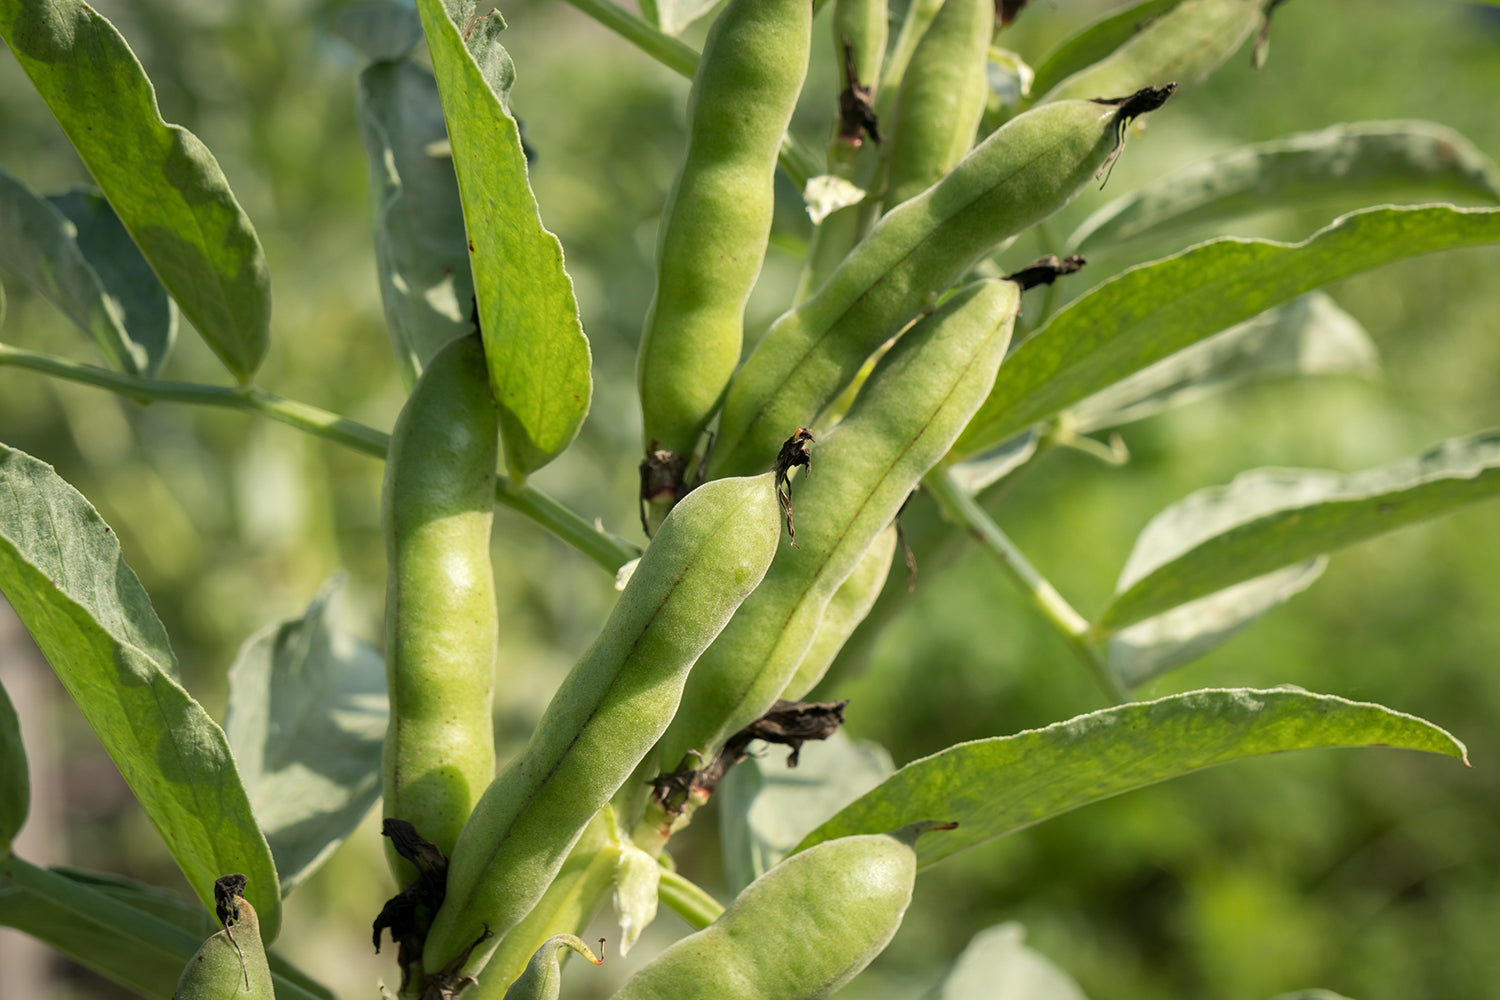 Black bean plant used in Kekoa Foods baby food puree.